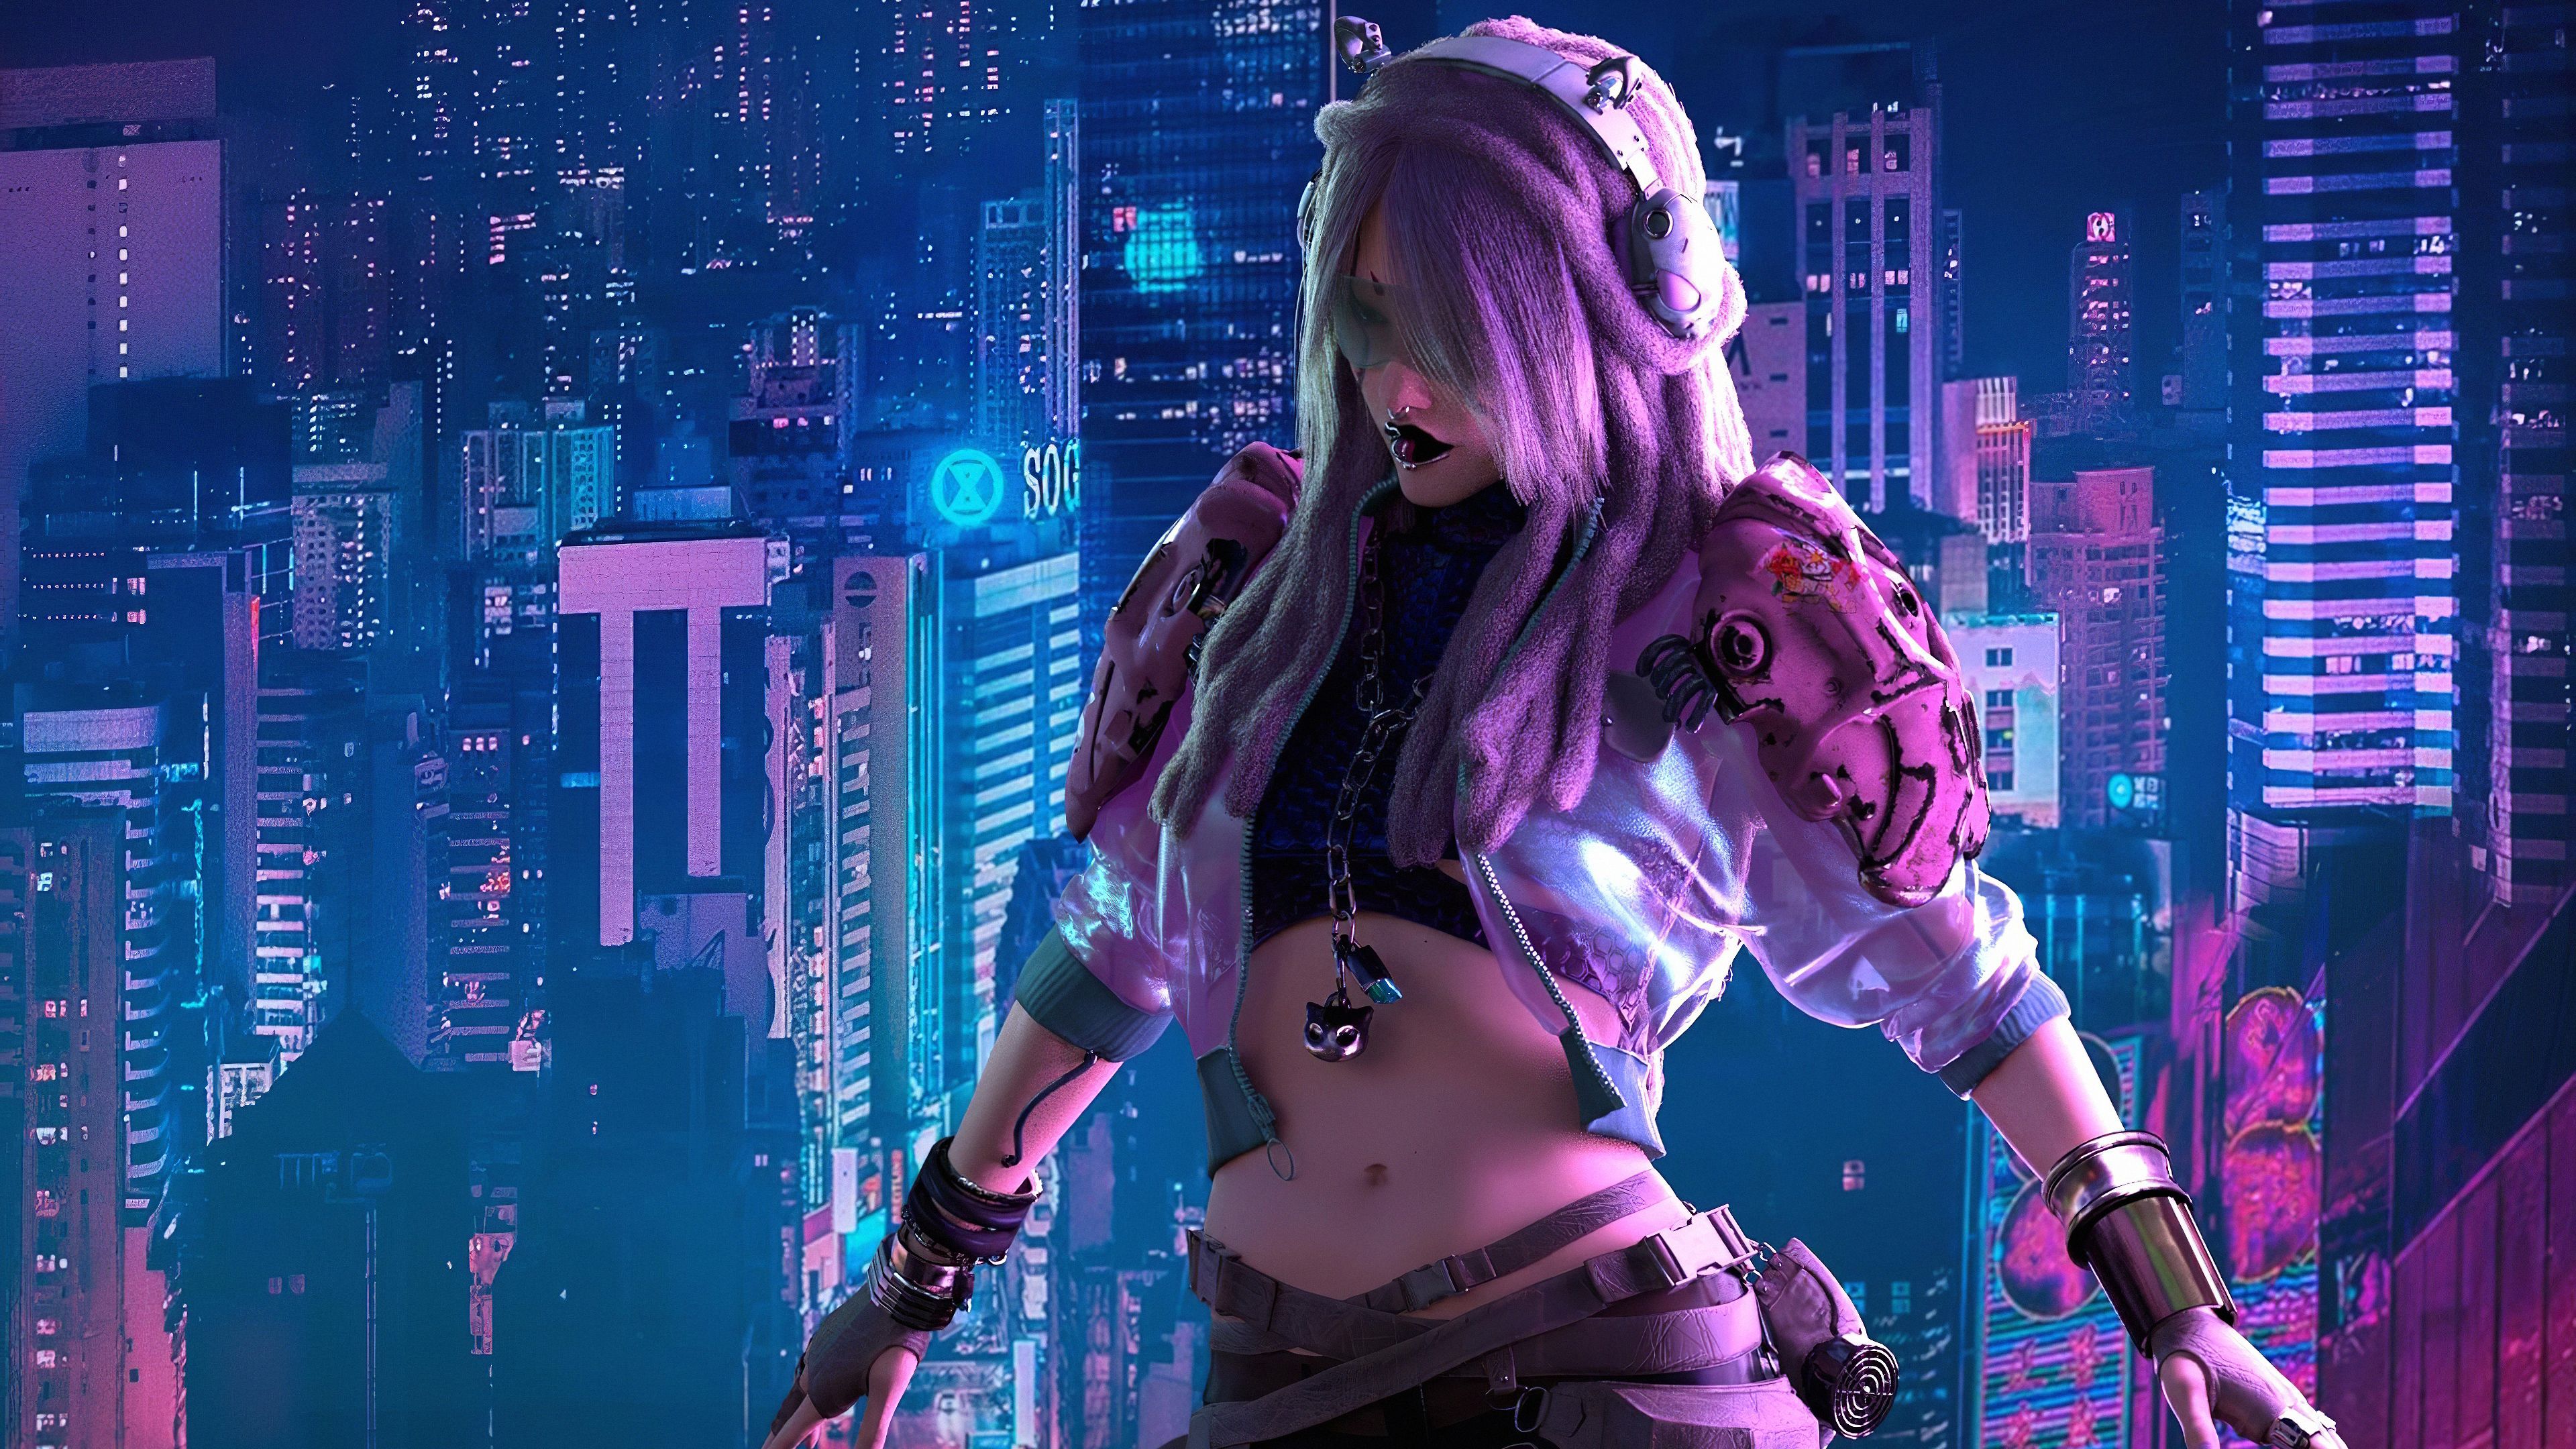 Cyberpunk City Girl. Cyberpunk city, City girl, Cyberpunk